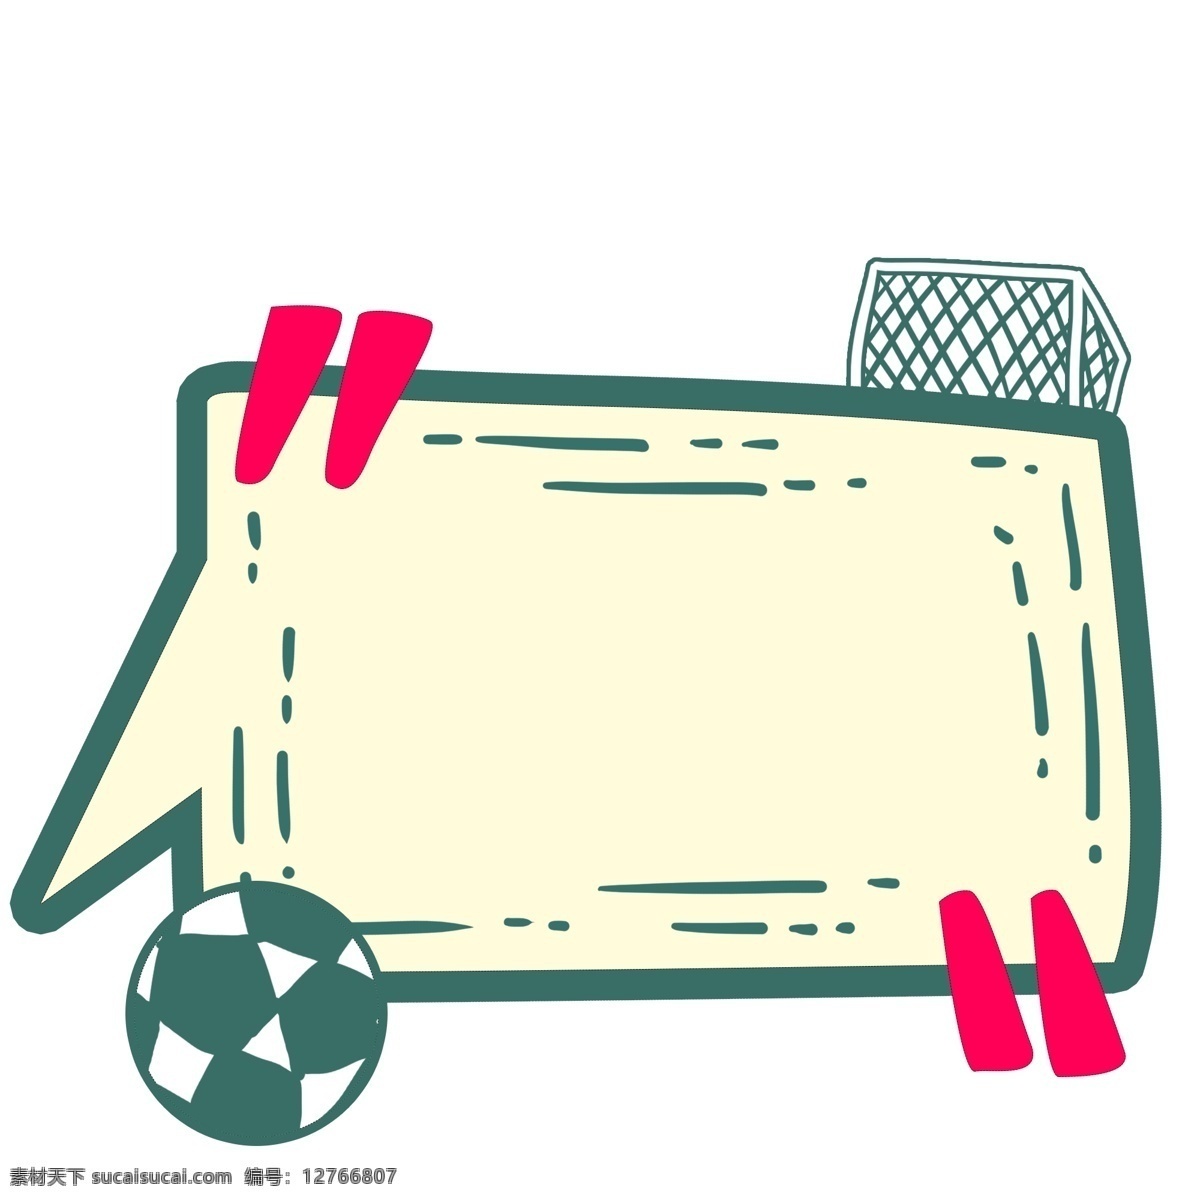 手绘 足球 对话框 插画 足球网对话框 足球场 红色 手绘对话框